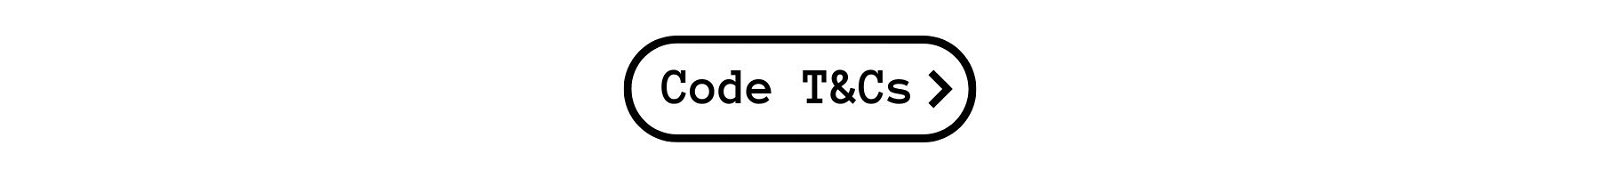 Discount Code T&Cs